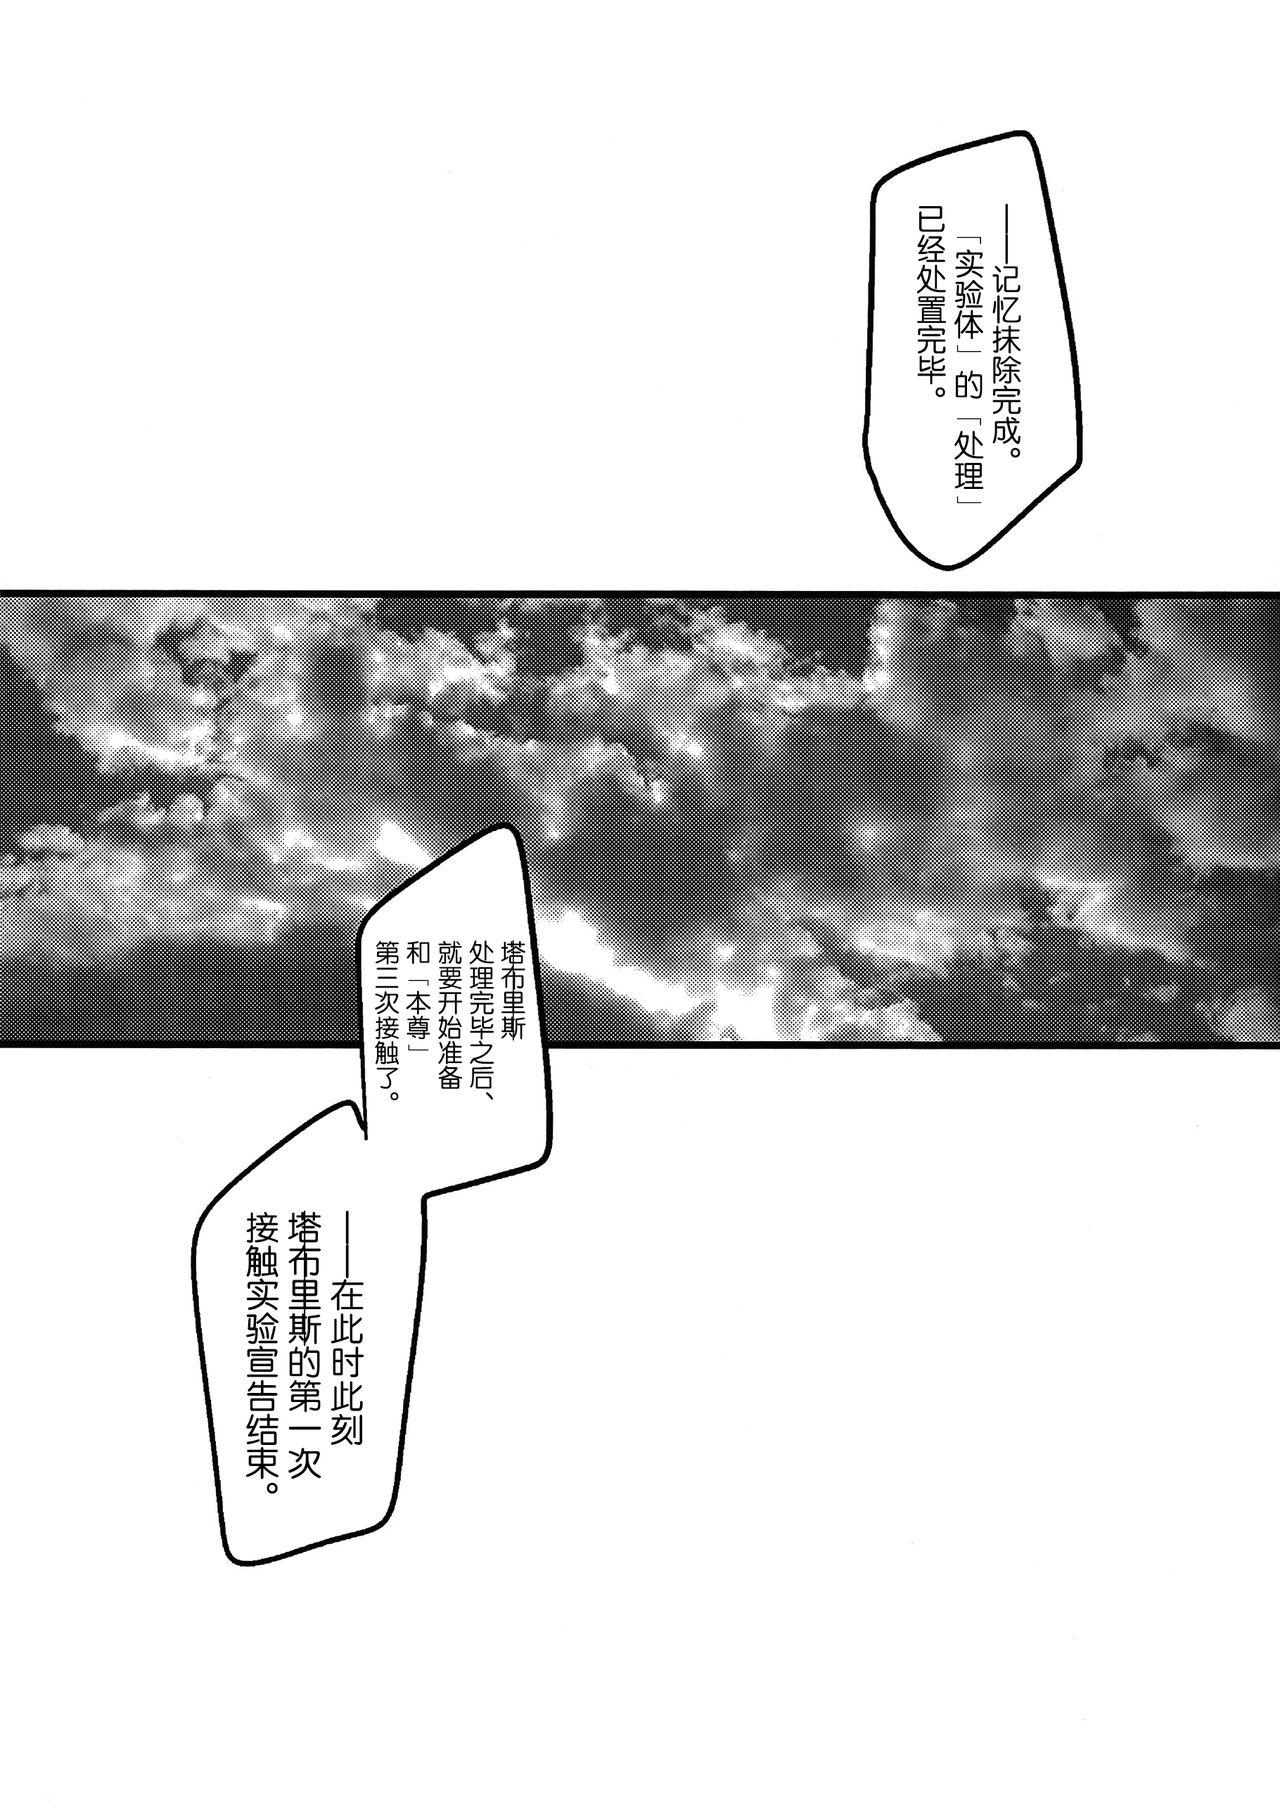 Jerk Off Ore no Koto o Ikari Shinji da to Omoikomu Saimin ni Kakatta Nagisa Kaworu-kun wa Mechamecha Yasashii - Neon genesis evangelion Ghetto - Page 11